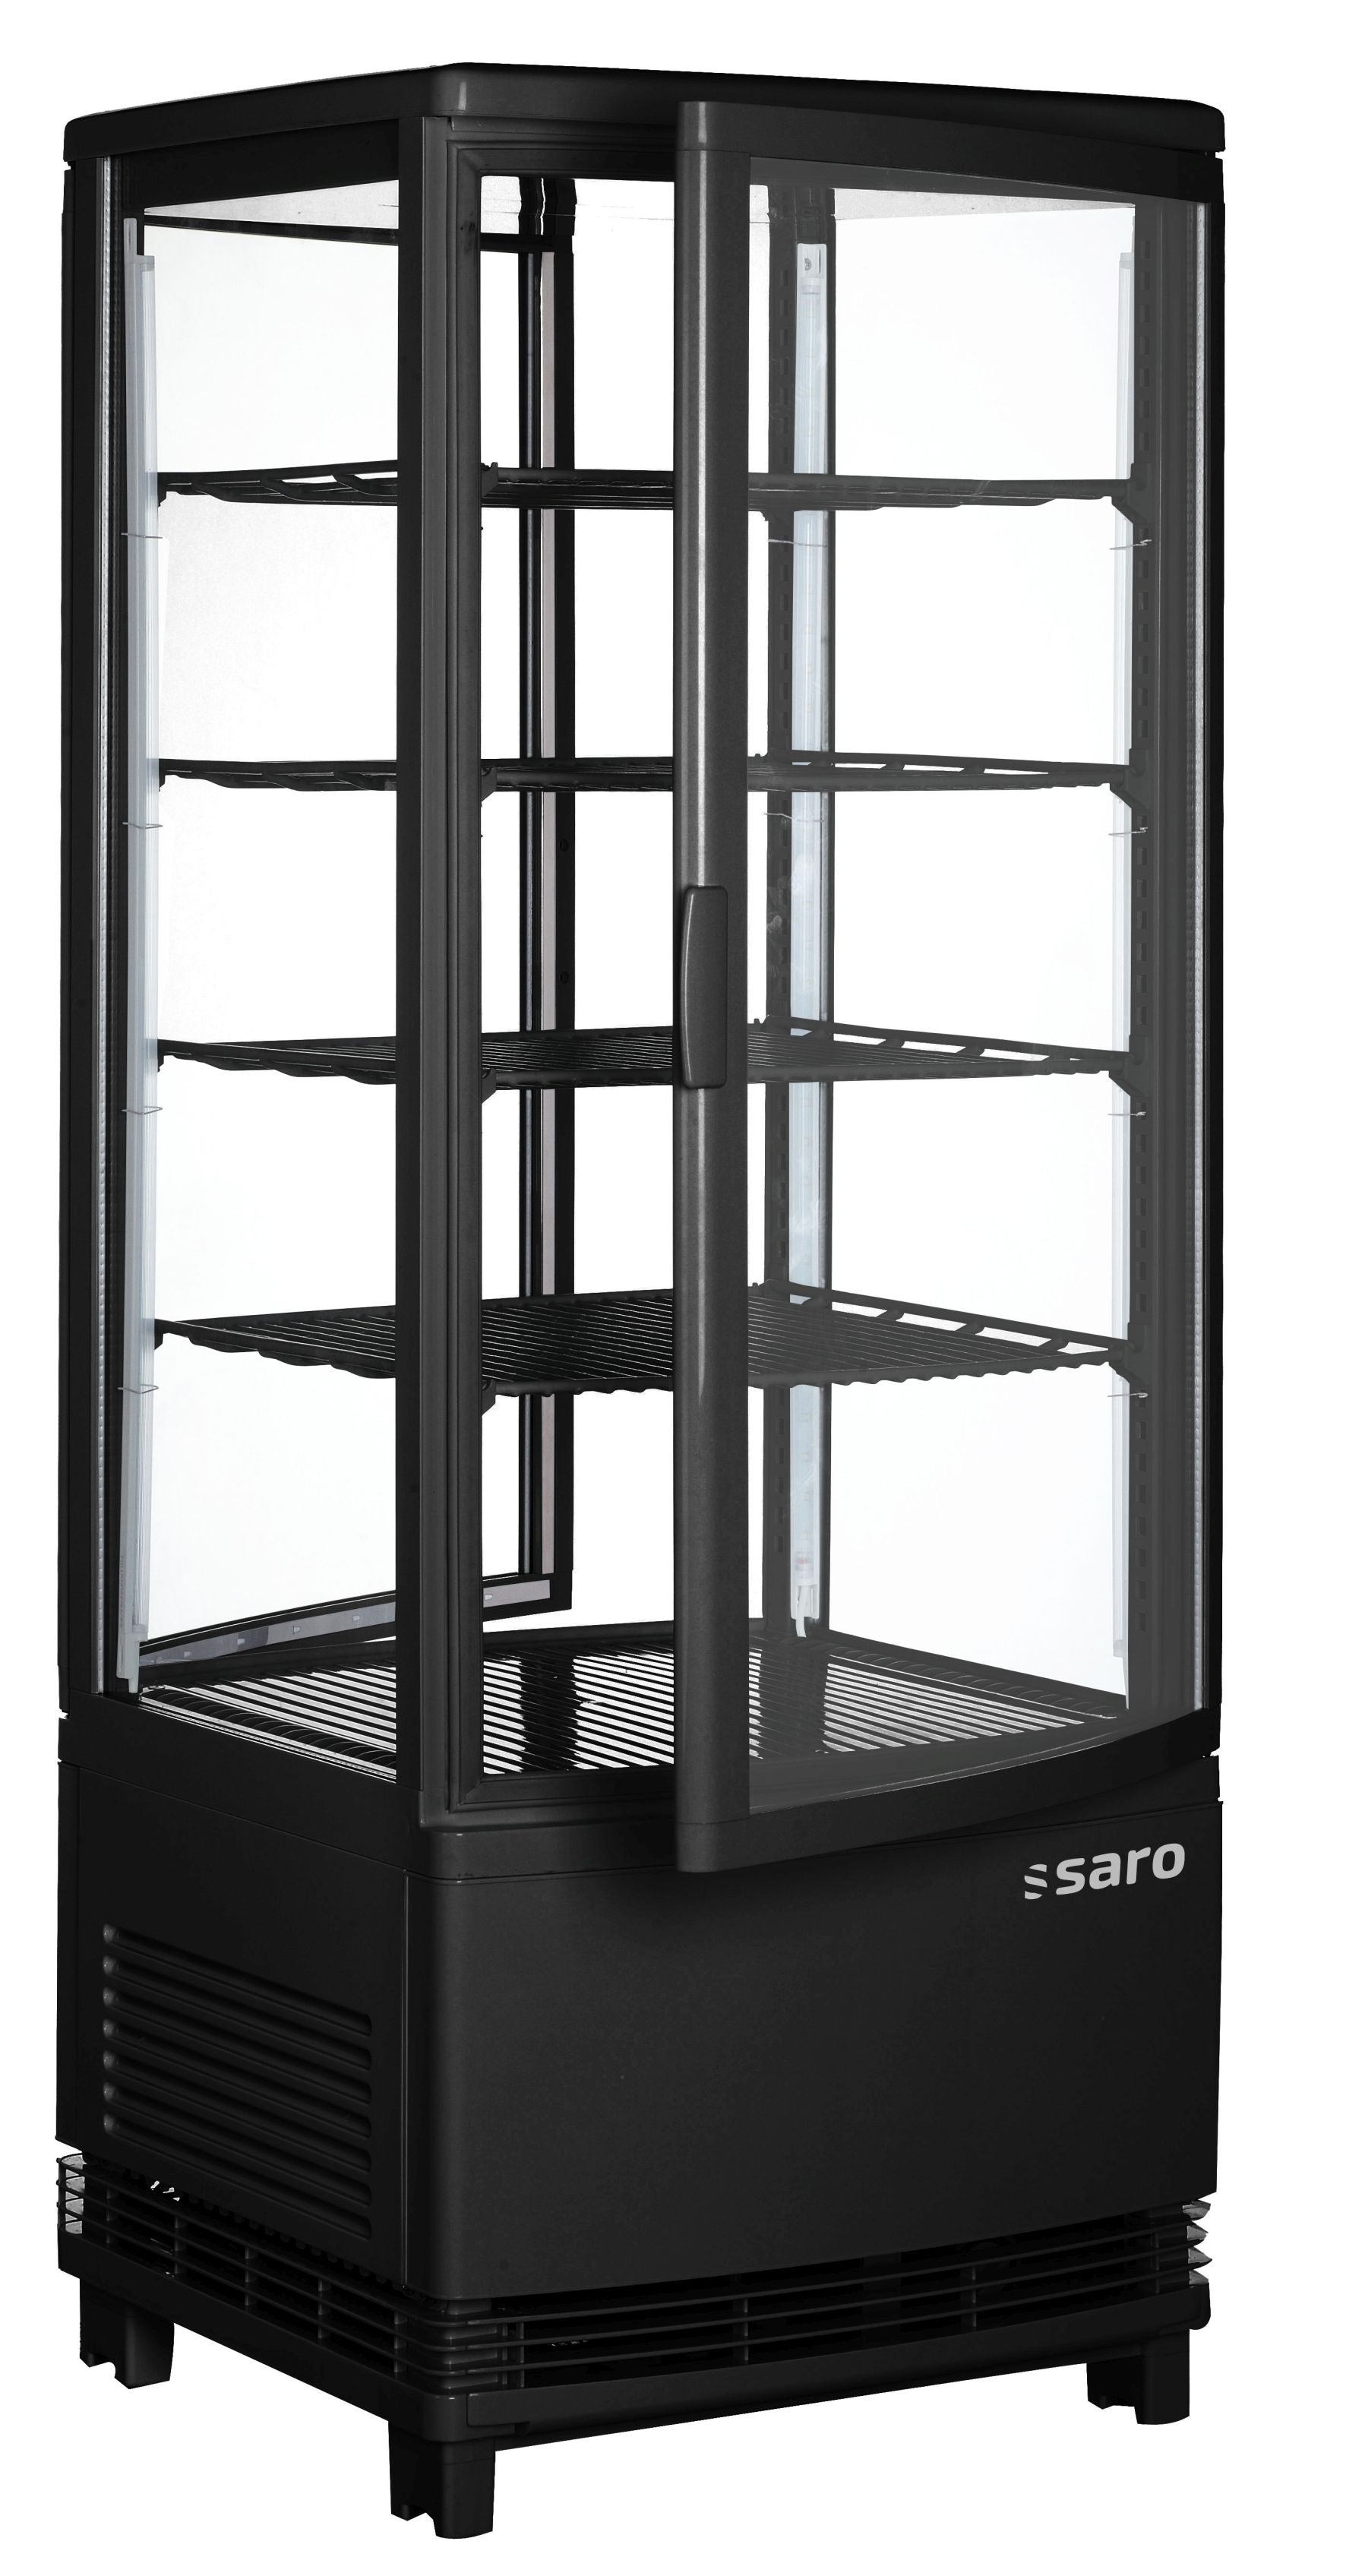 SARO Kølemontre med dobbeltdøre, model SC 100 DT sort